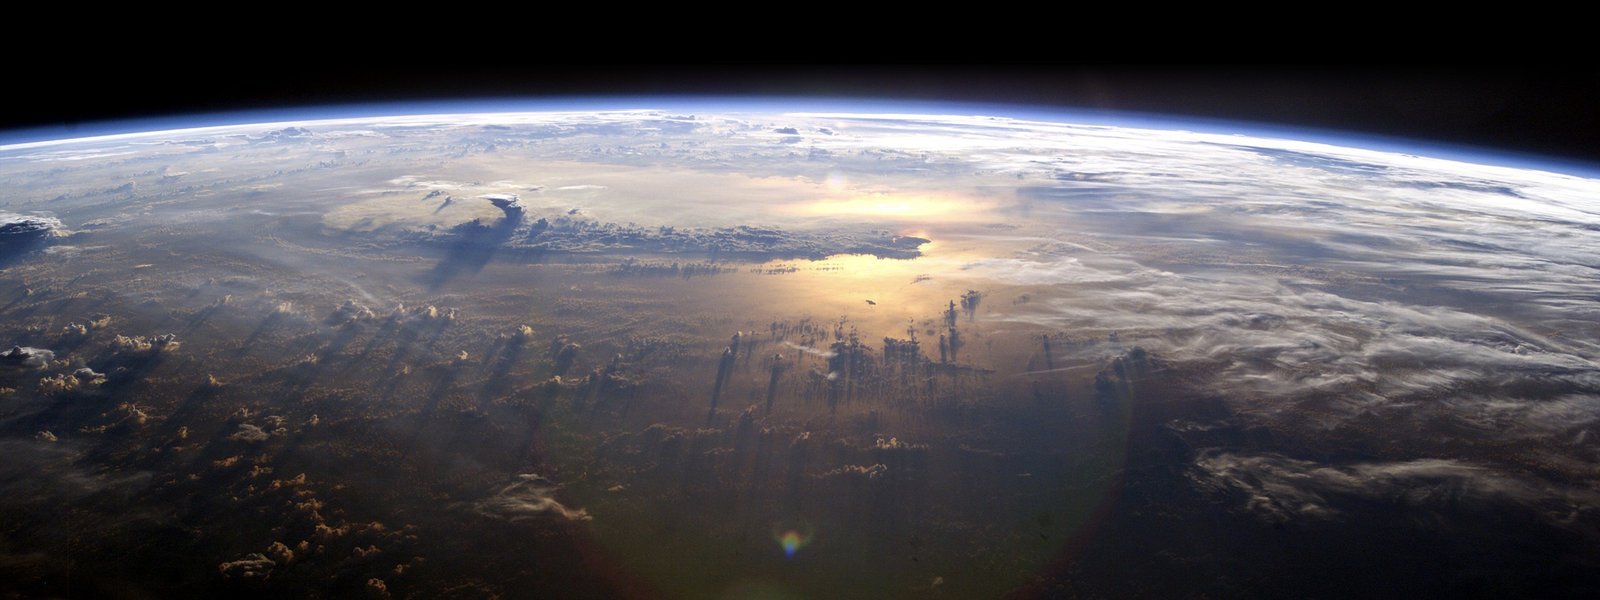 Планета в 3D: компания Google представила новое расширение программы Google Earth